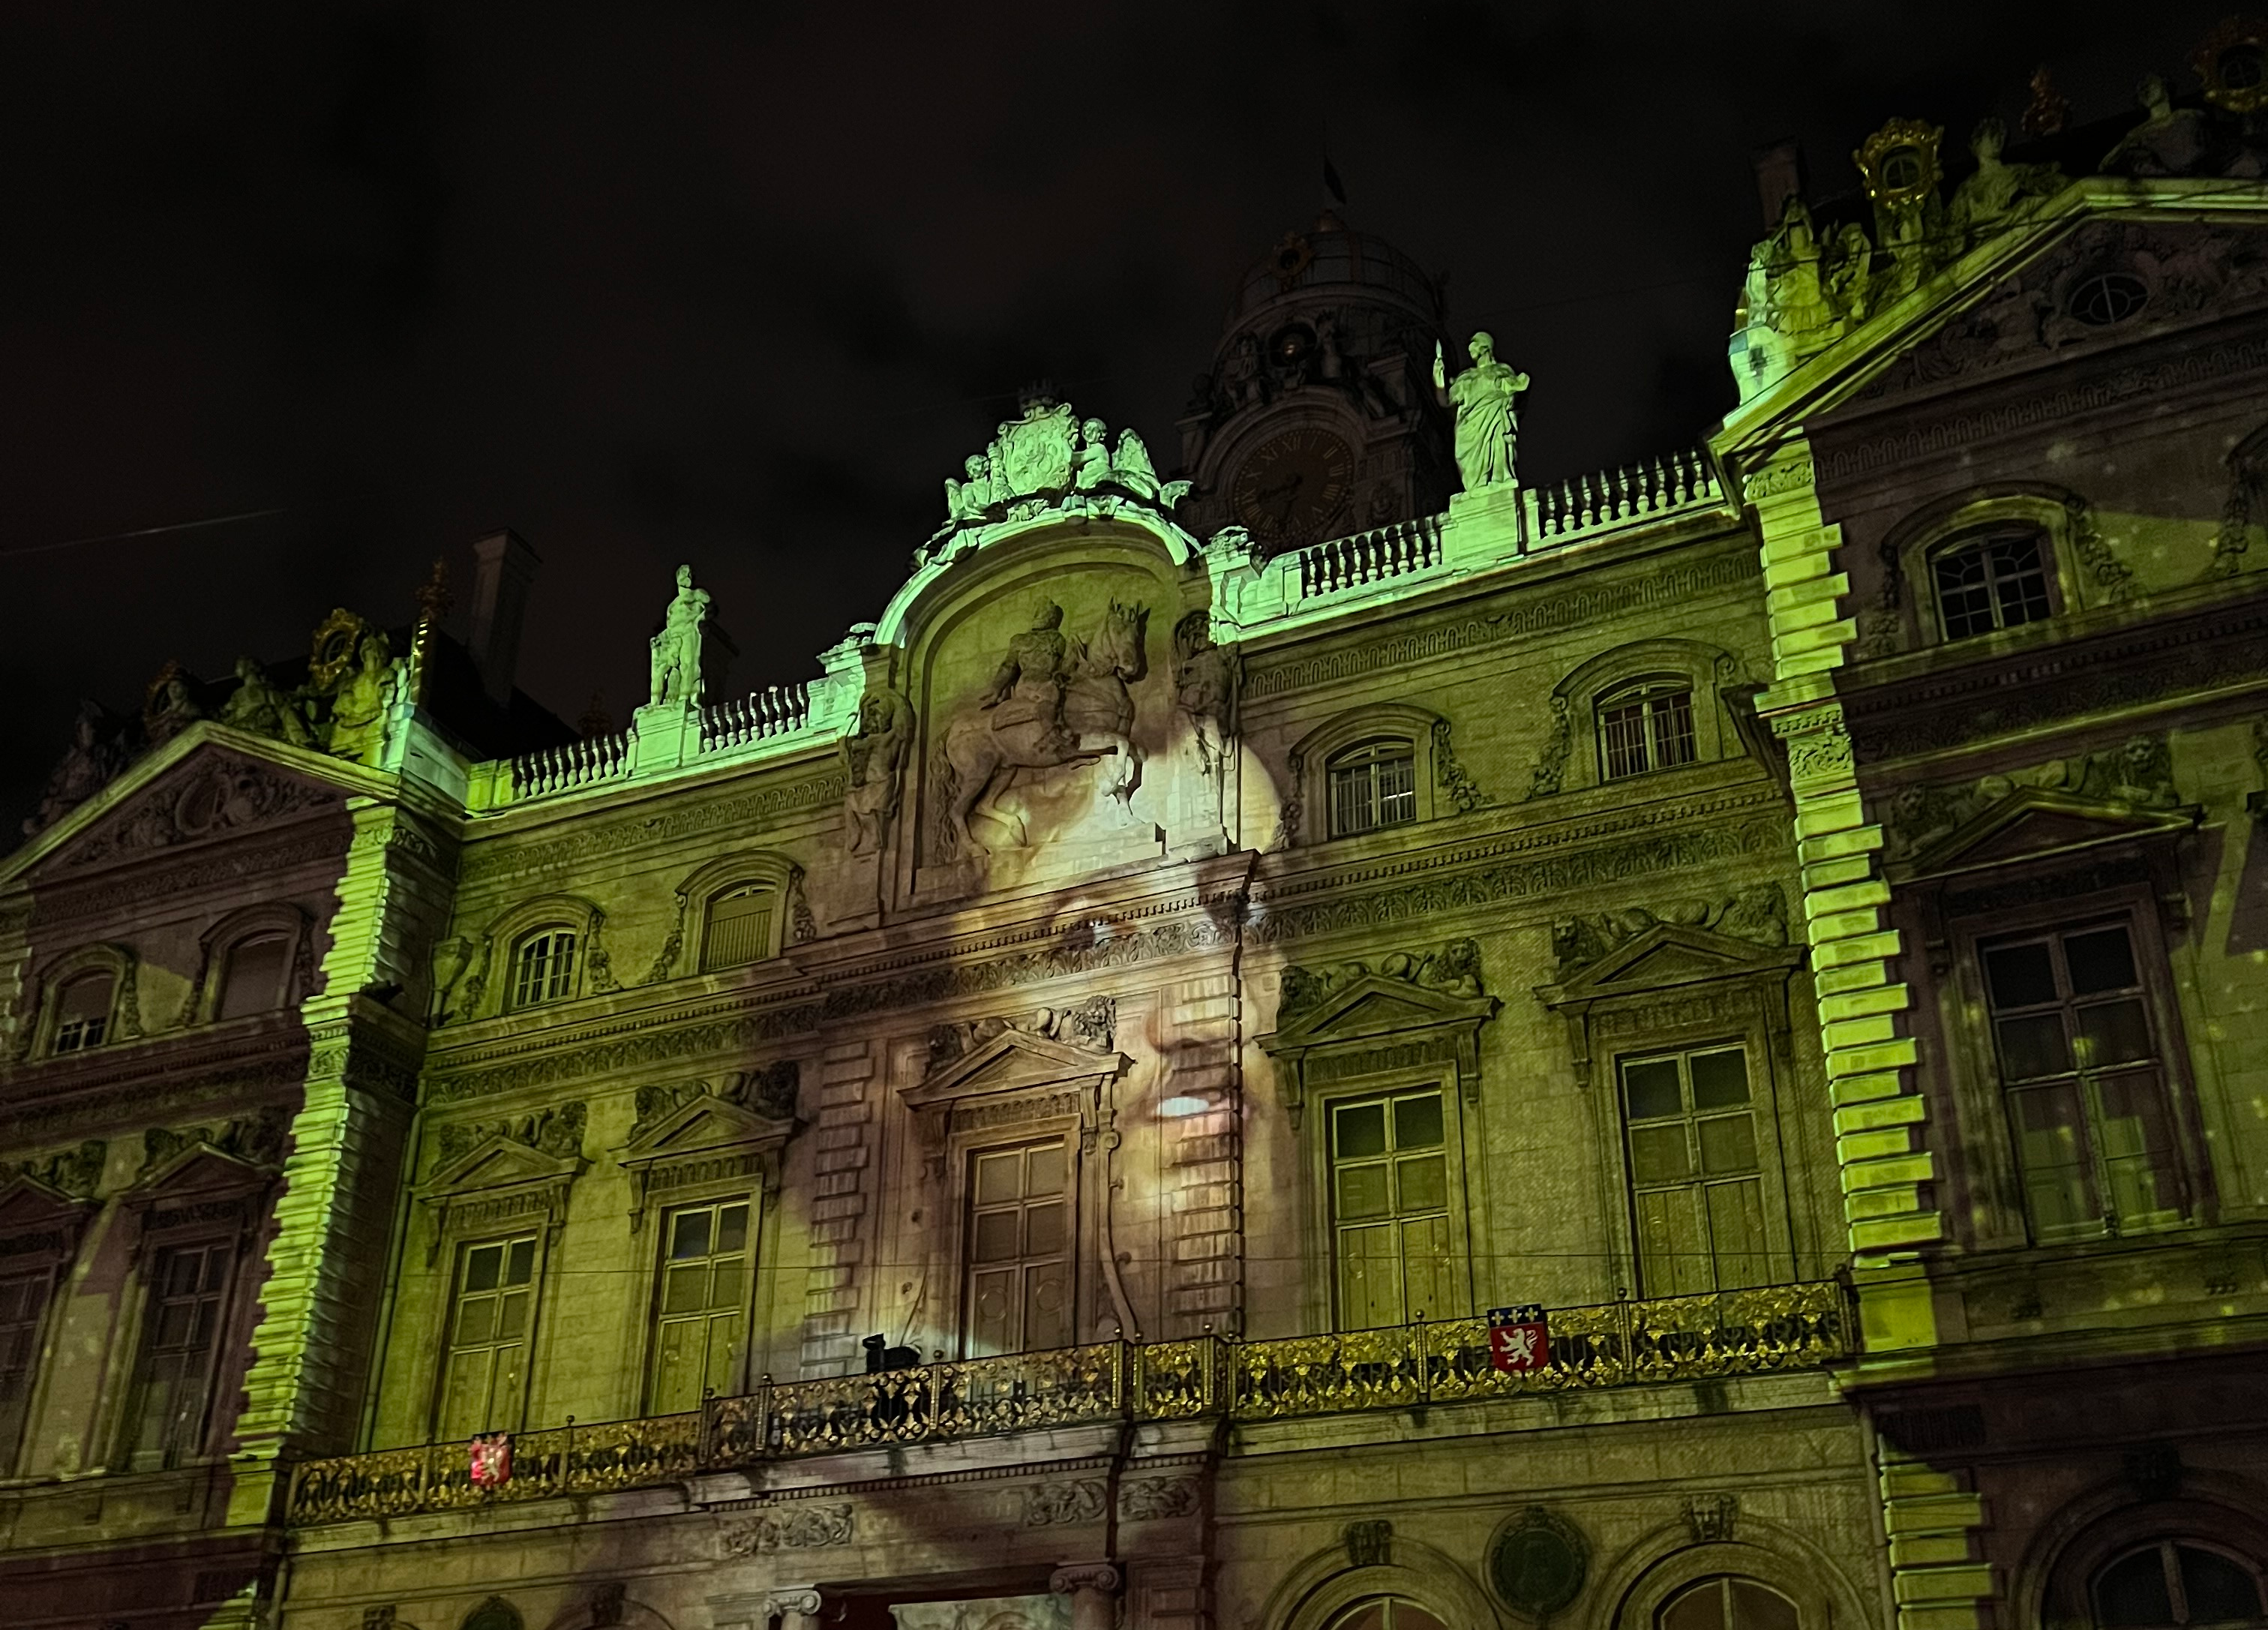 A Lyon, la Fête des lumières à l'heure de la sobriété énergétique